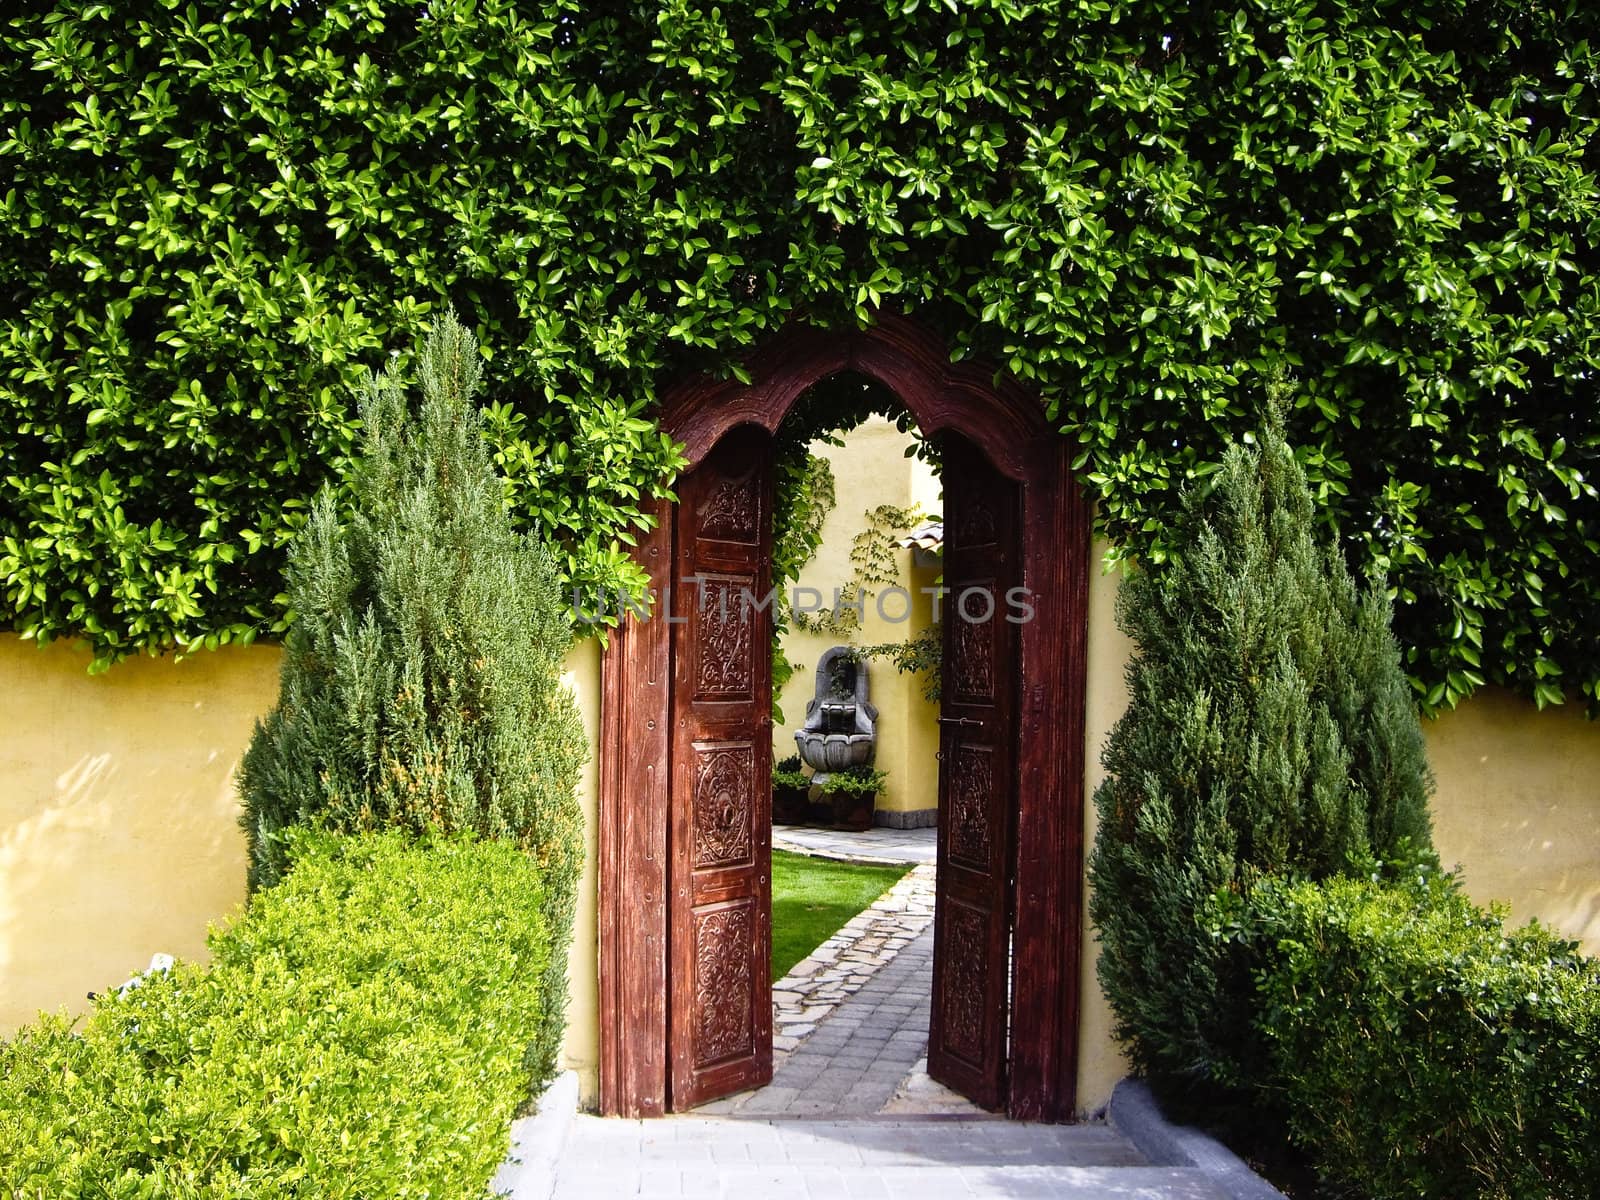 Carved wooden doorway leads to secret garden